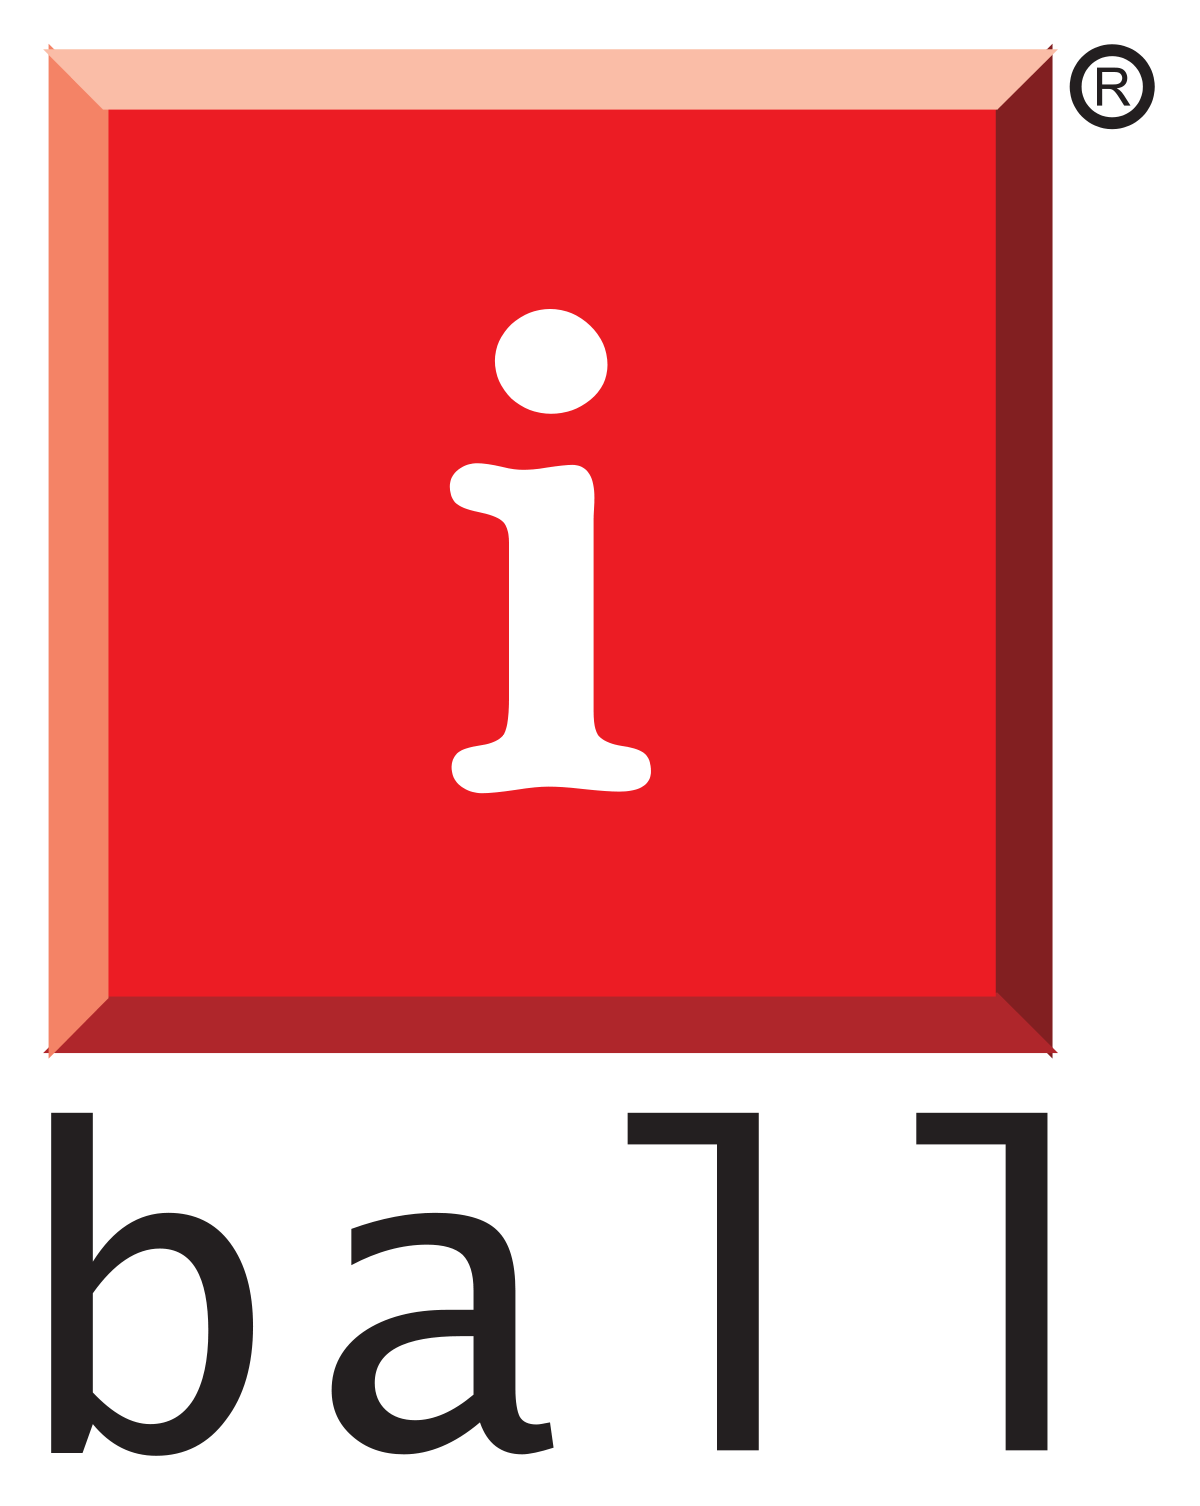 Red Ball Company Logo - iBall (company)